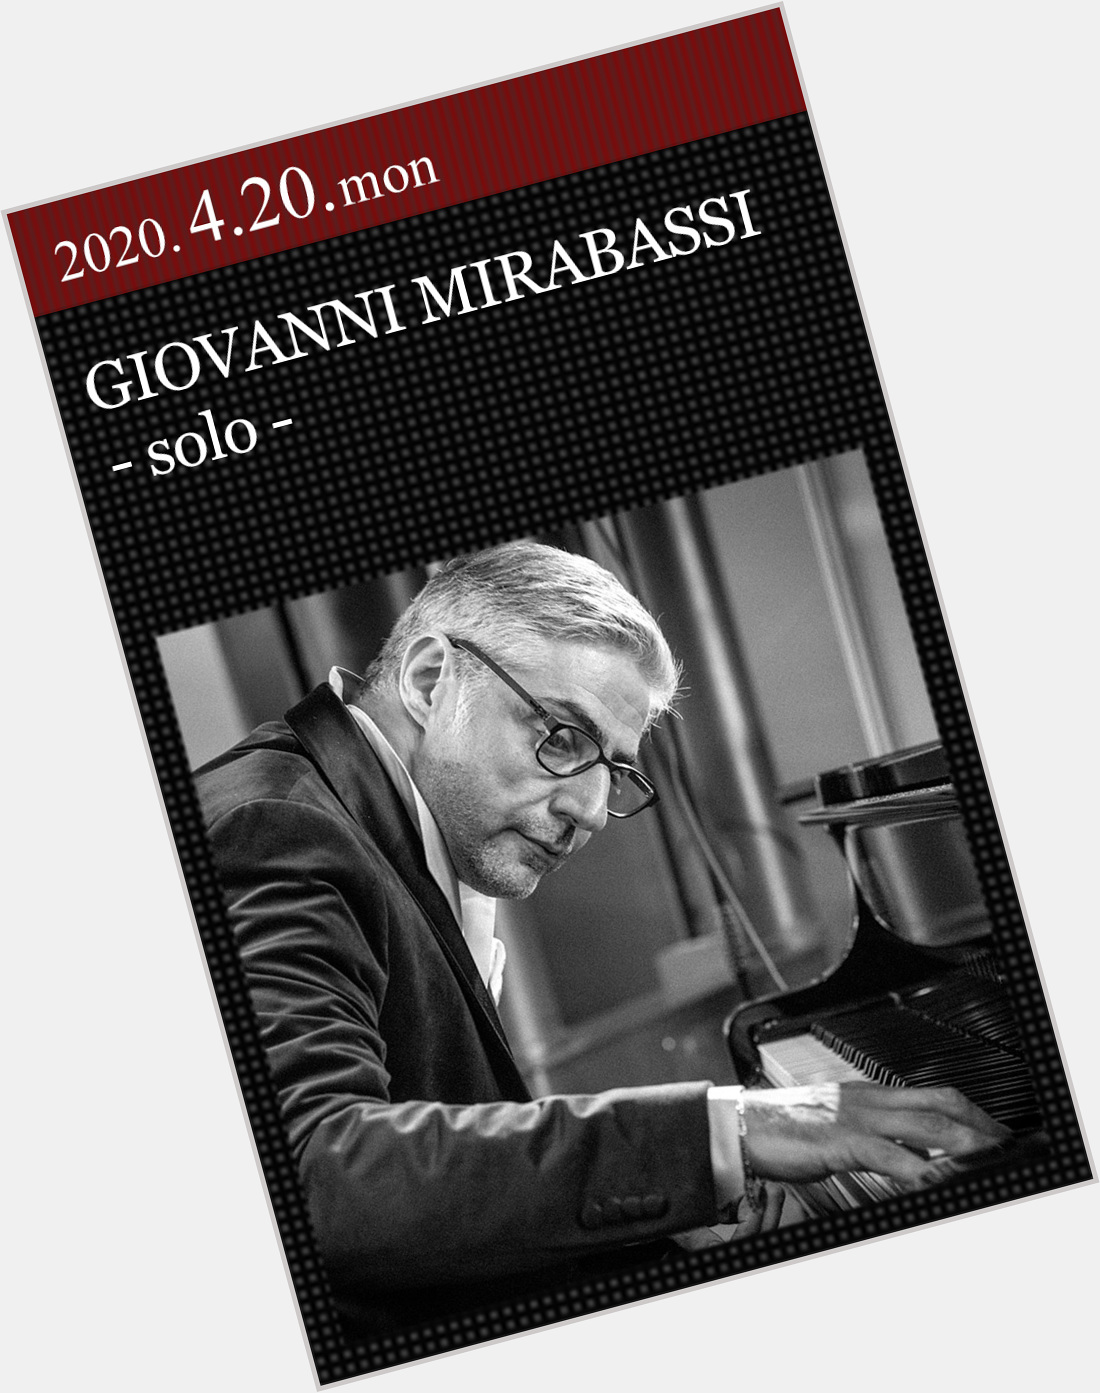 Giovanni Mirabassi where who 3